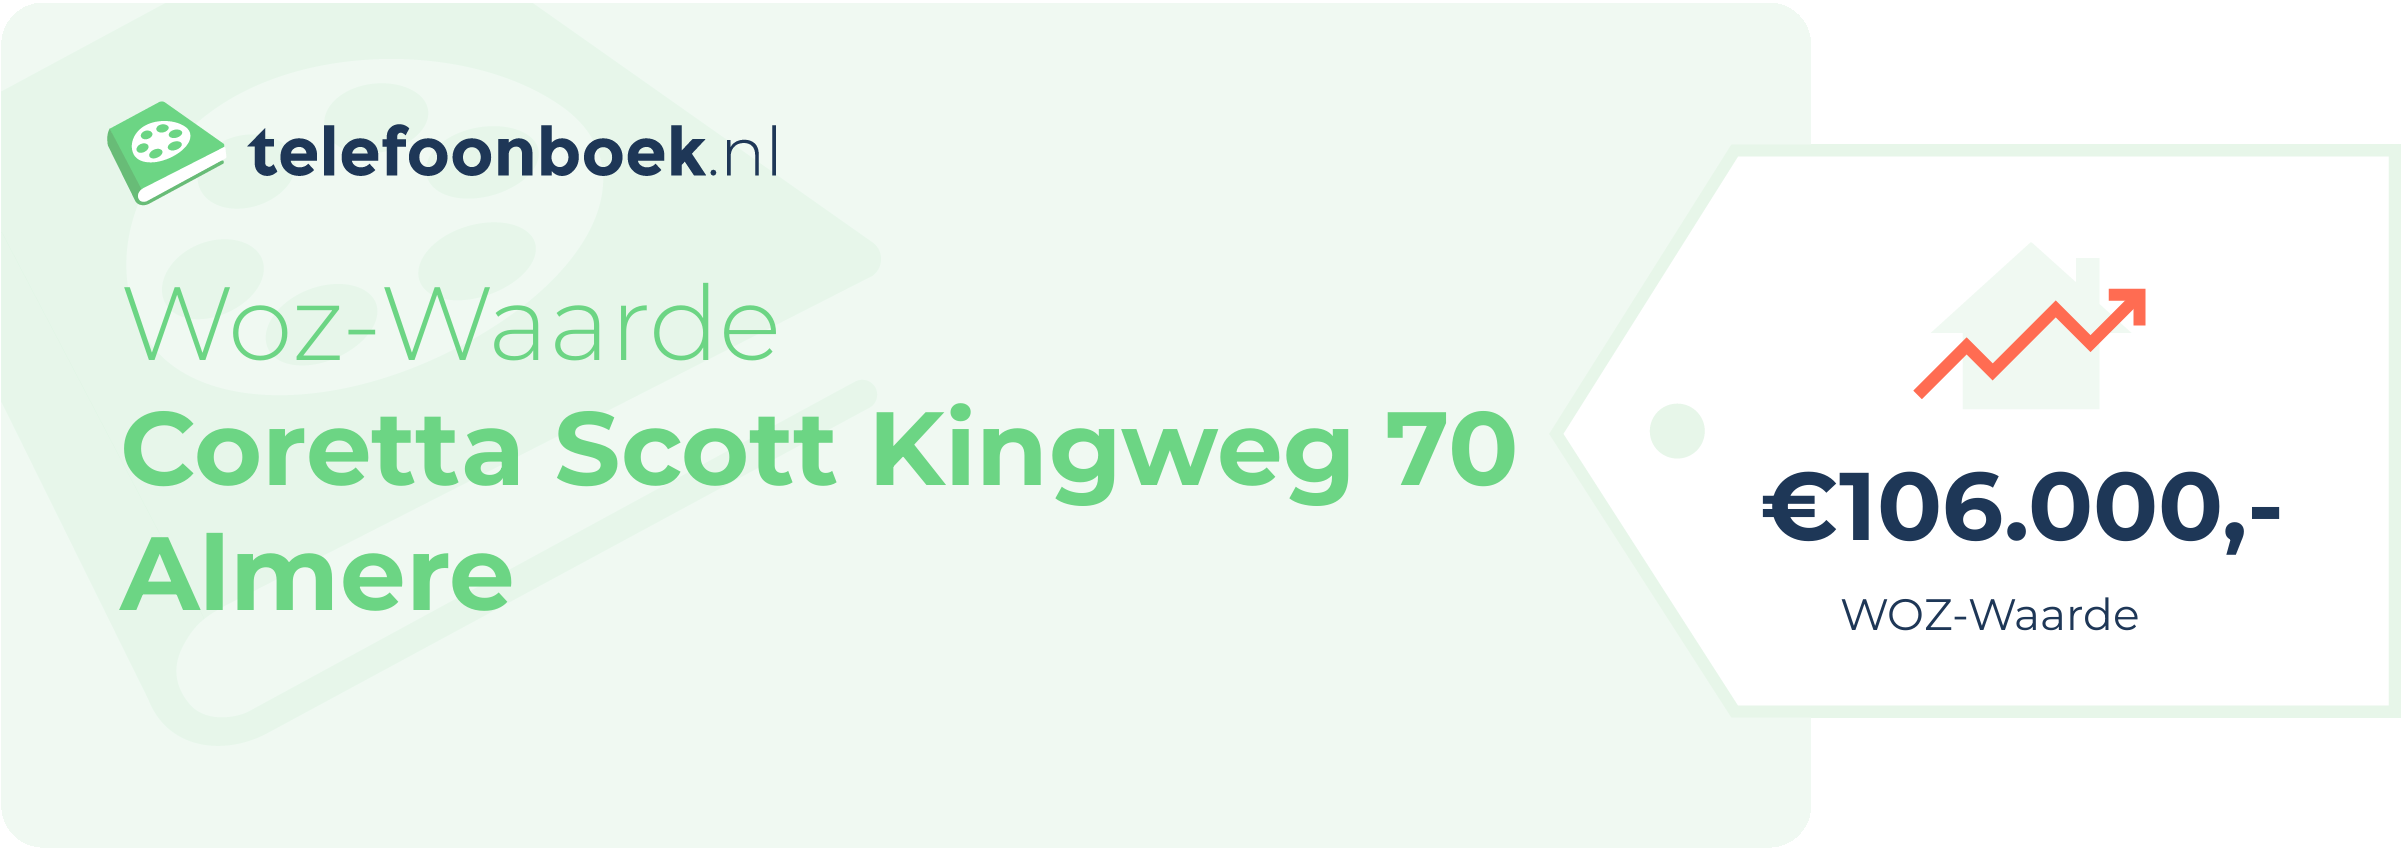 WOZ-waarde Coretta Scott Kingweg 70 Almere